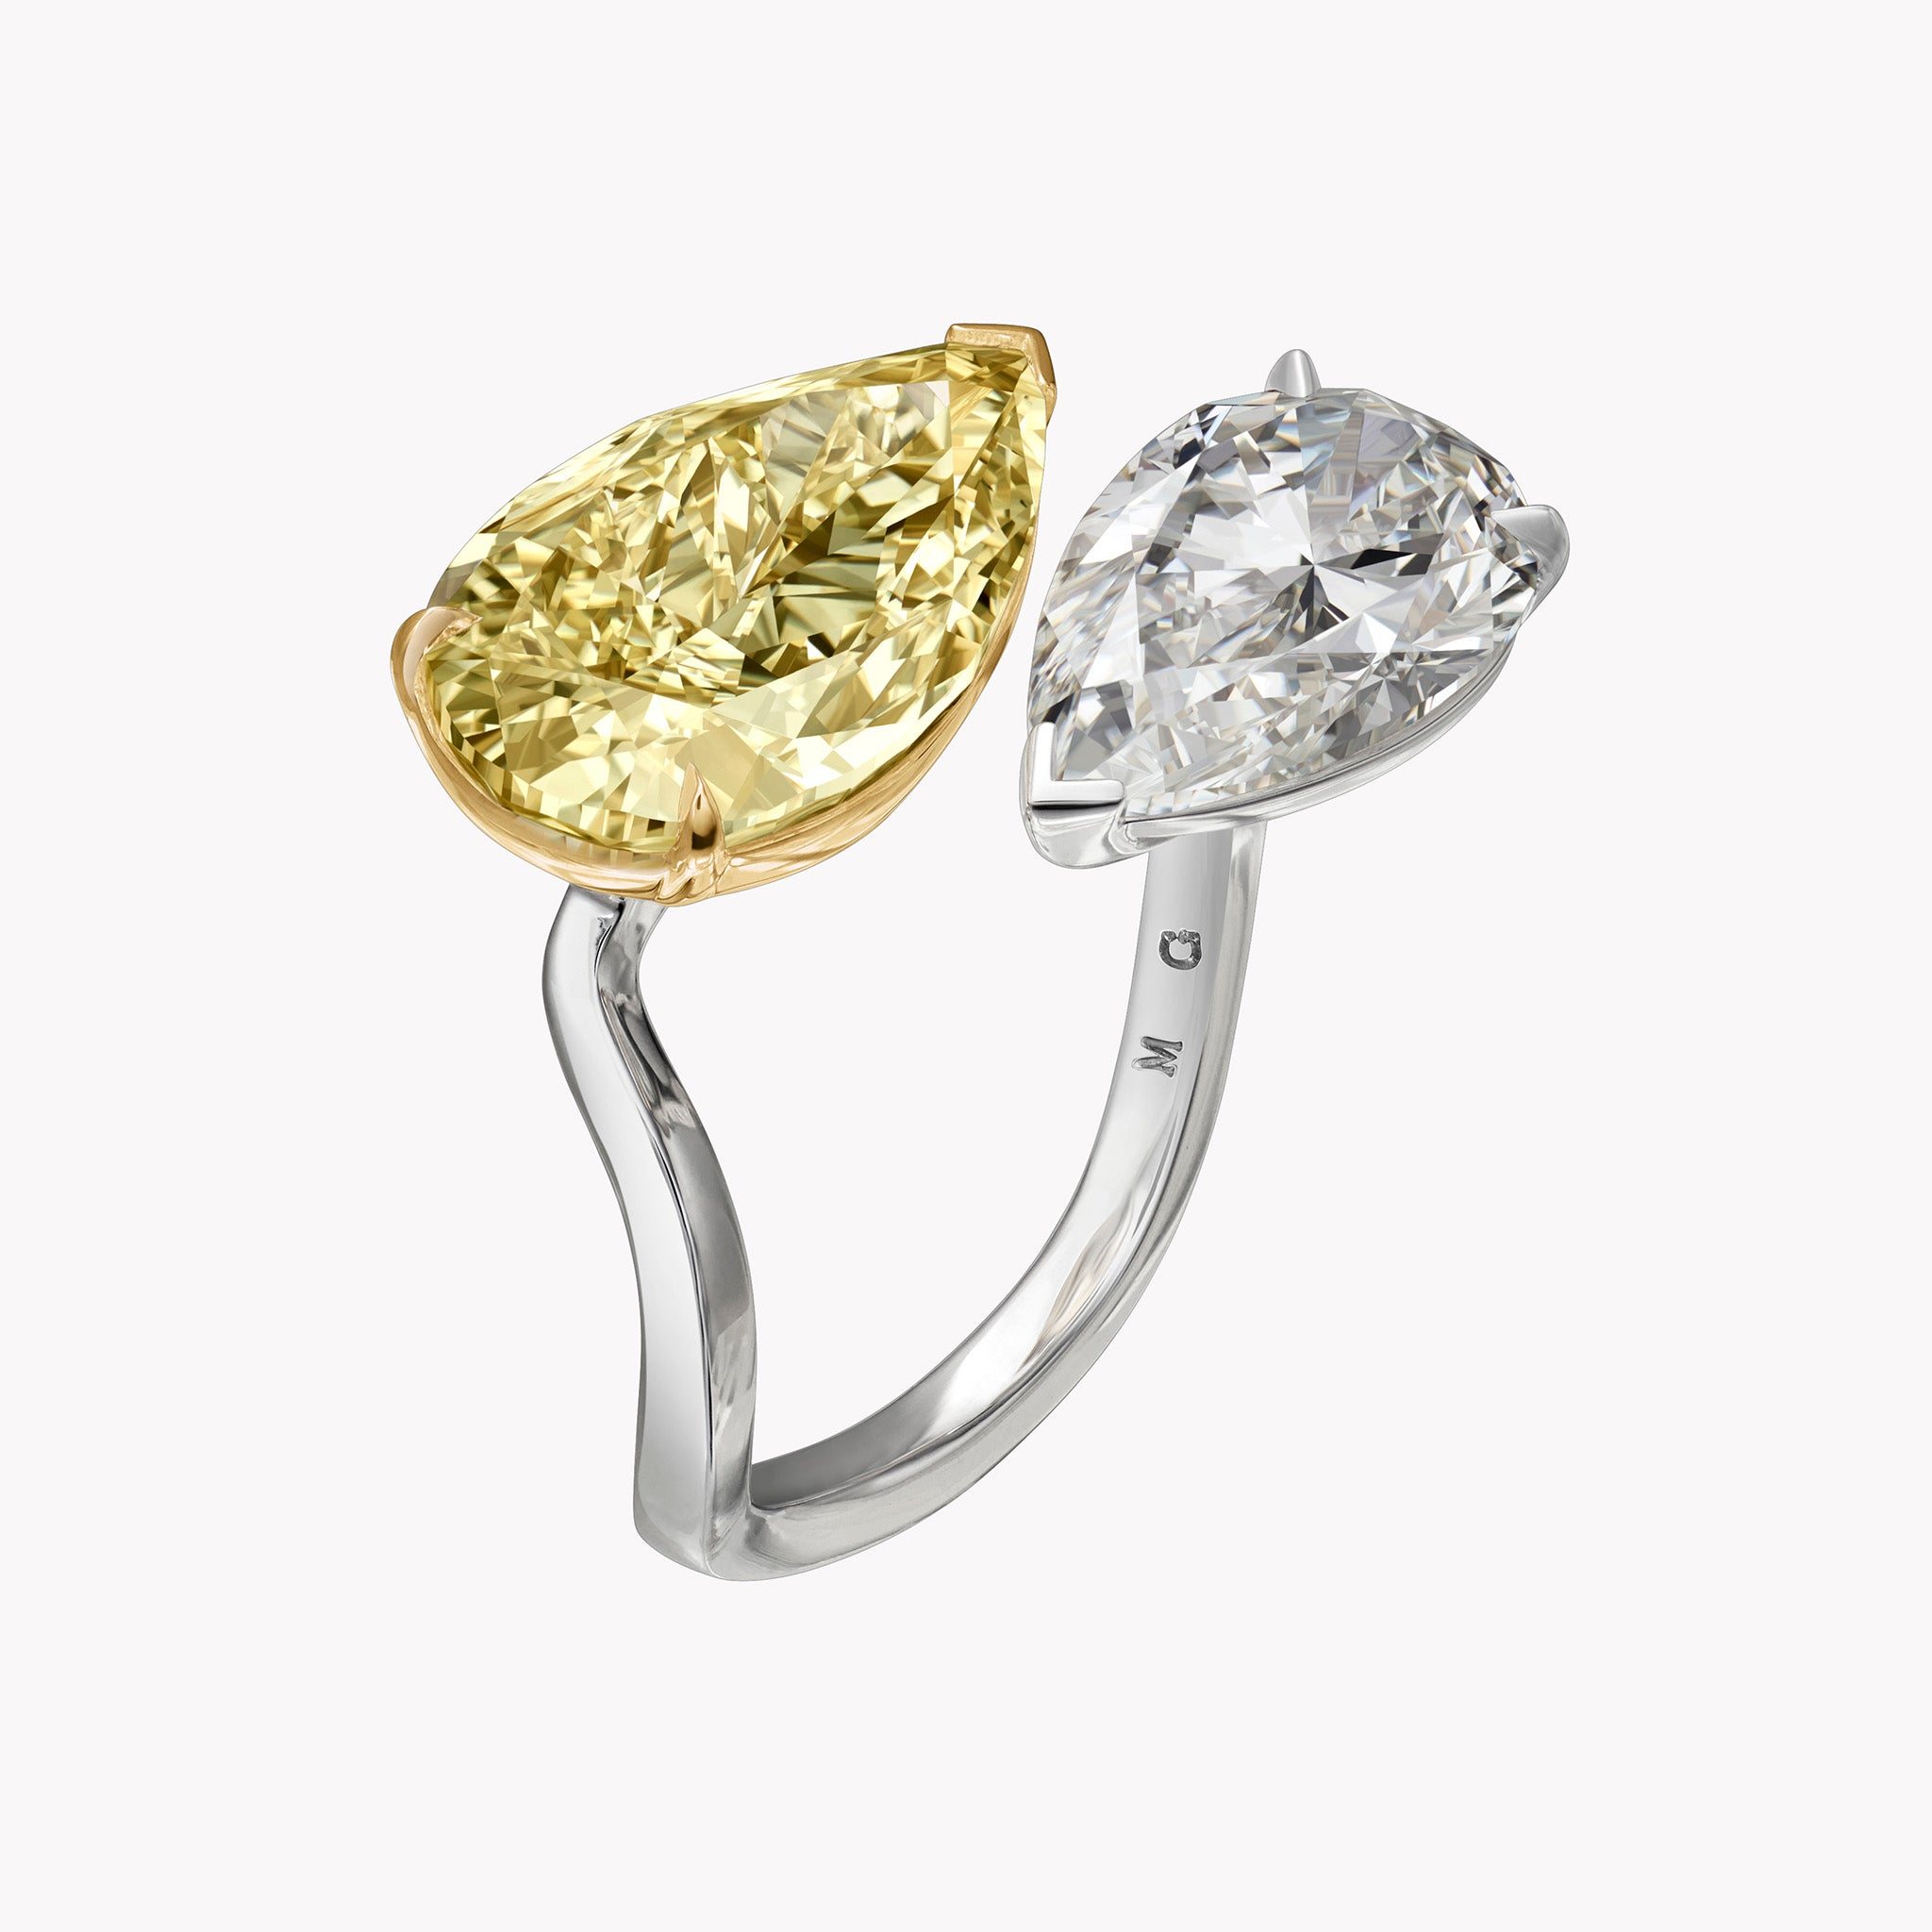 The Keira Diamond Duo Ring